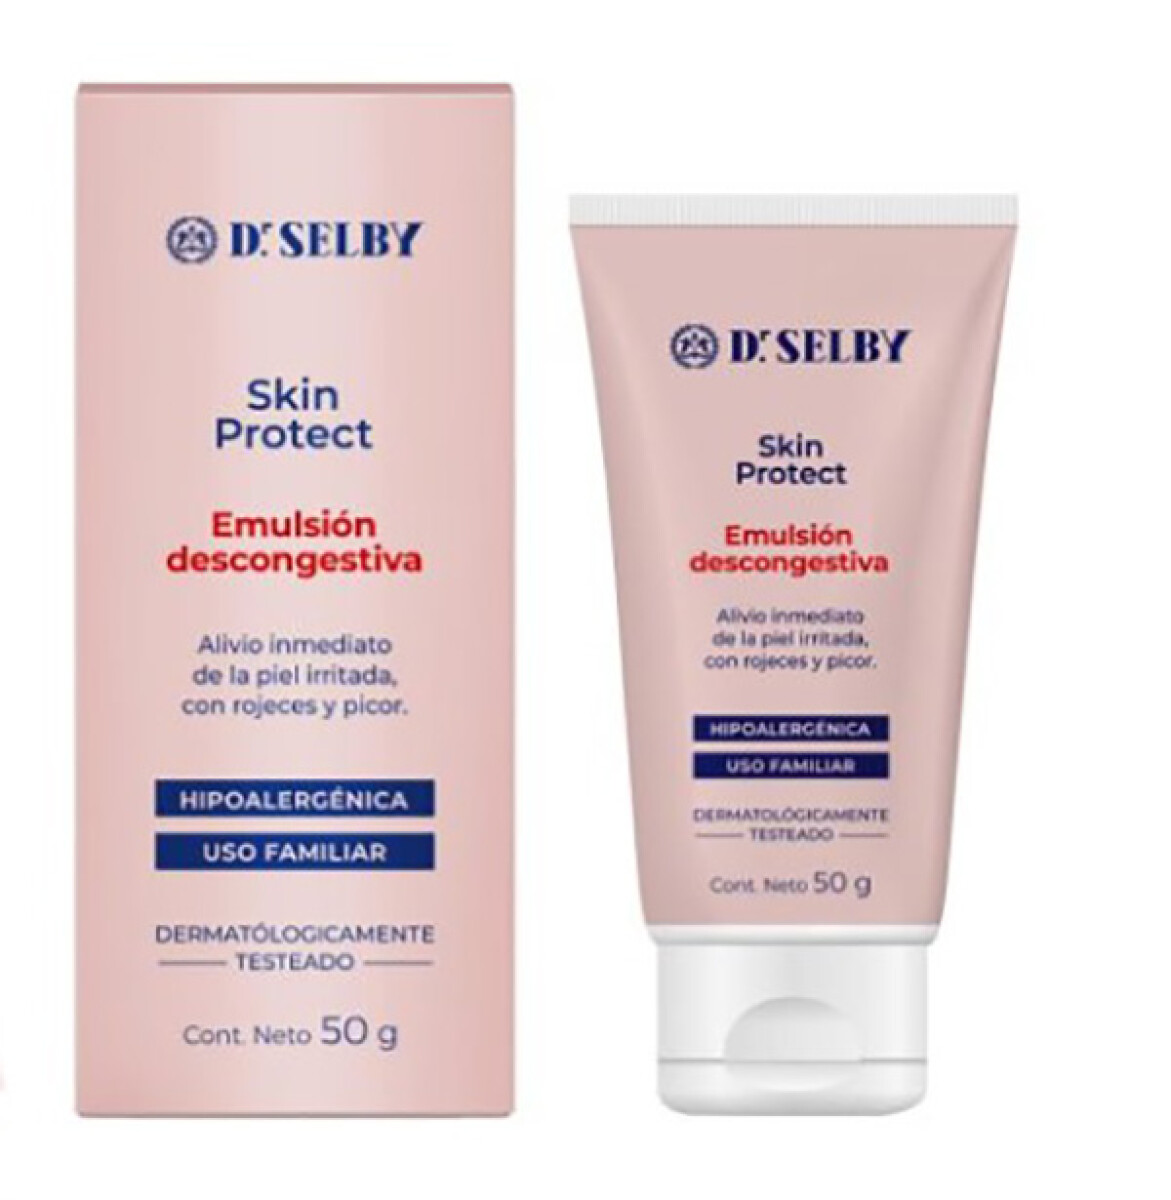 Crema Dr selby Skin protect - Emulsión descongestiva 50 g 